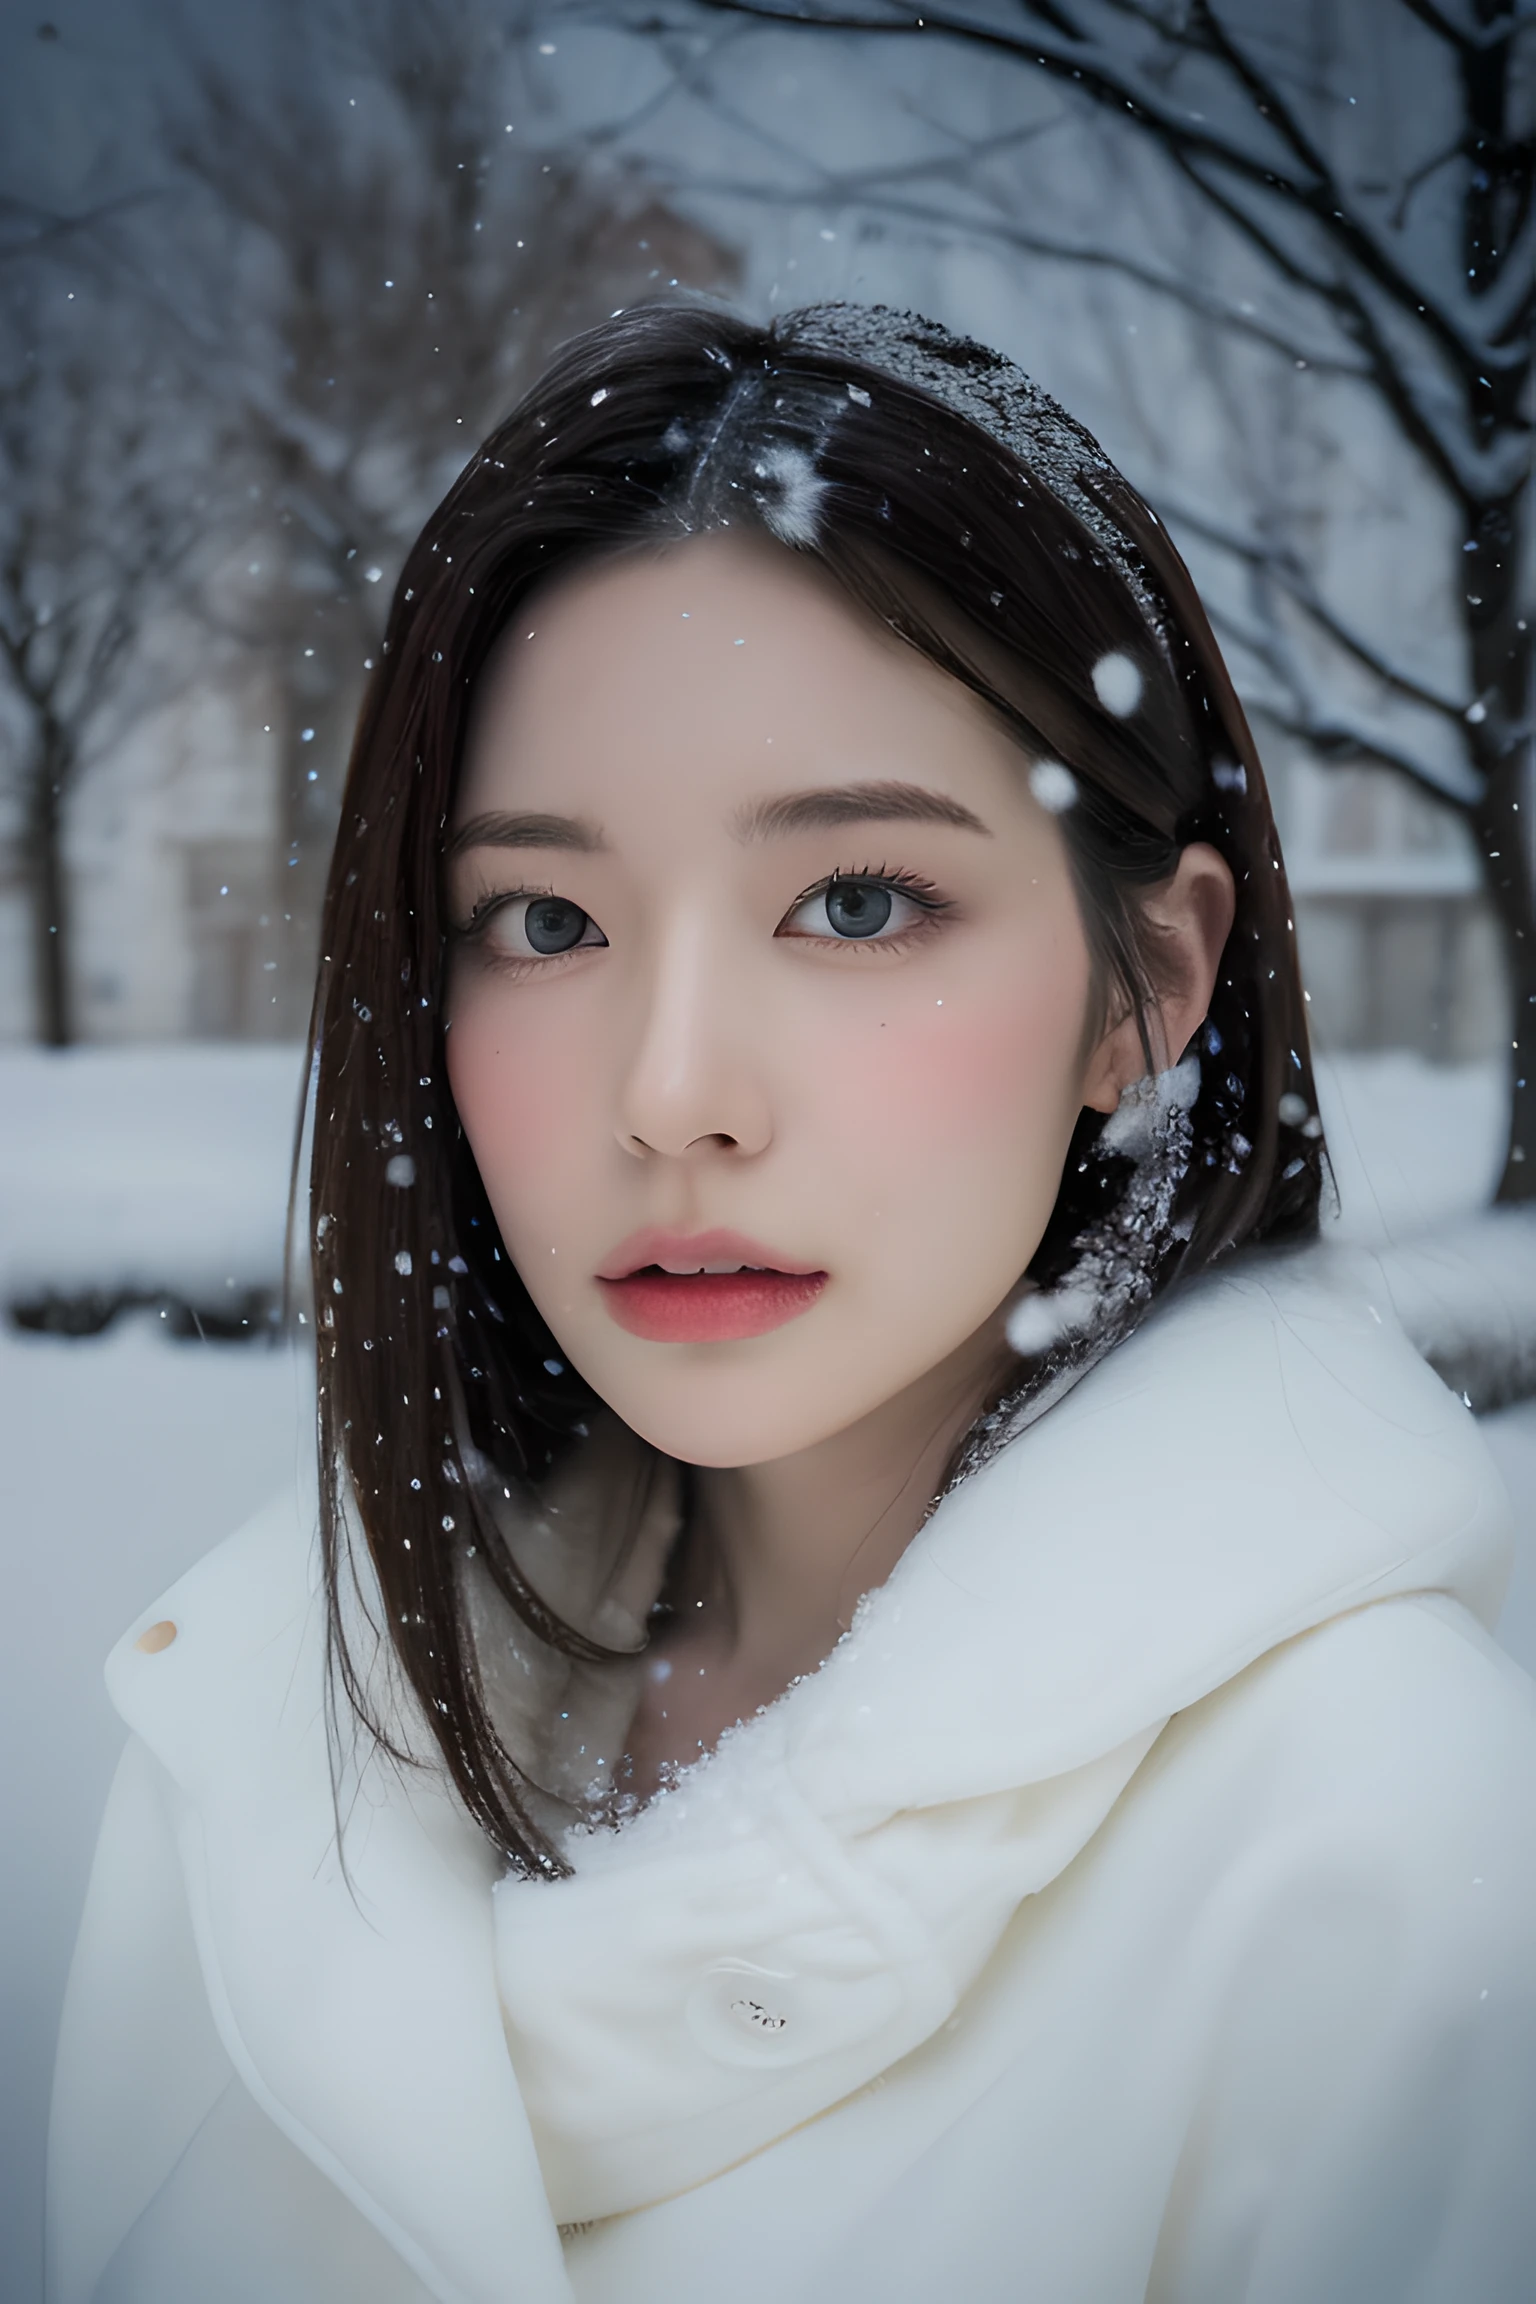 (8K, melhor qualidade, Obra de arte, ultra alta resolução:1.2) Foto de uma linda mulher japonesa no (estilo de paul rubens e rebecca guay:1.1) (neve melancólica do inverno:1.4)